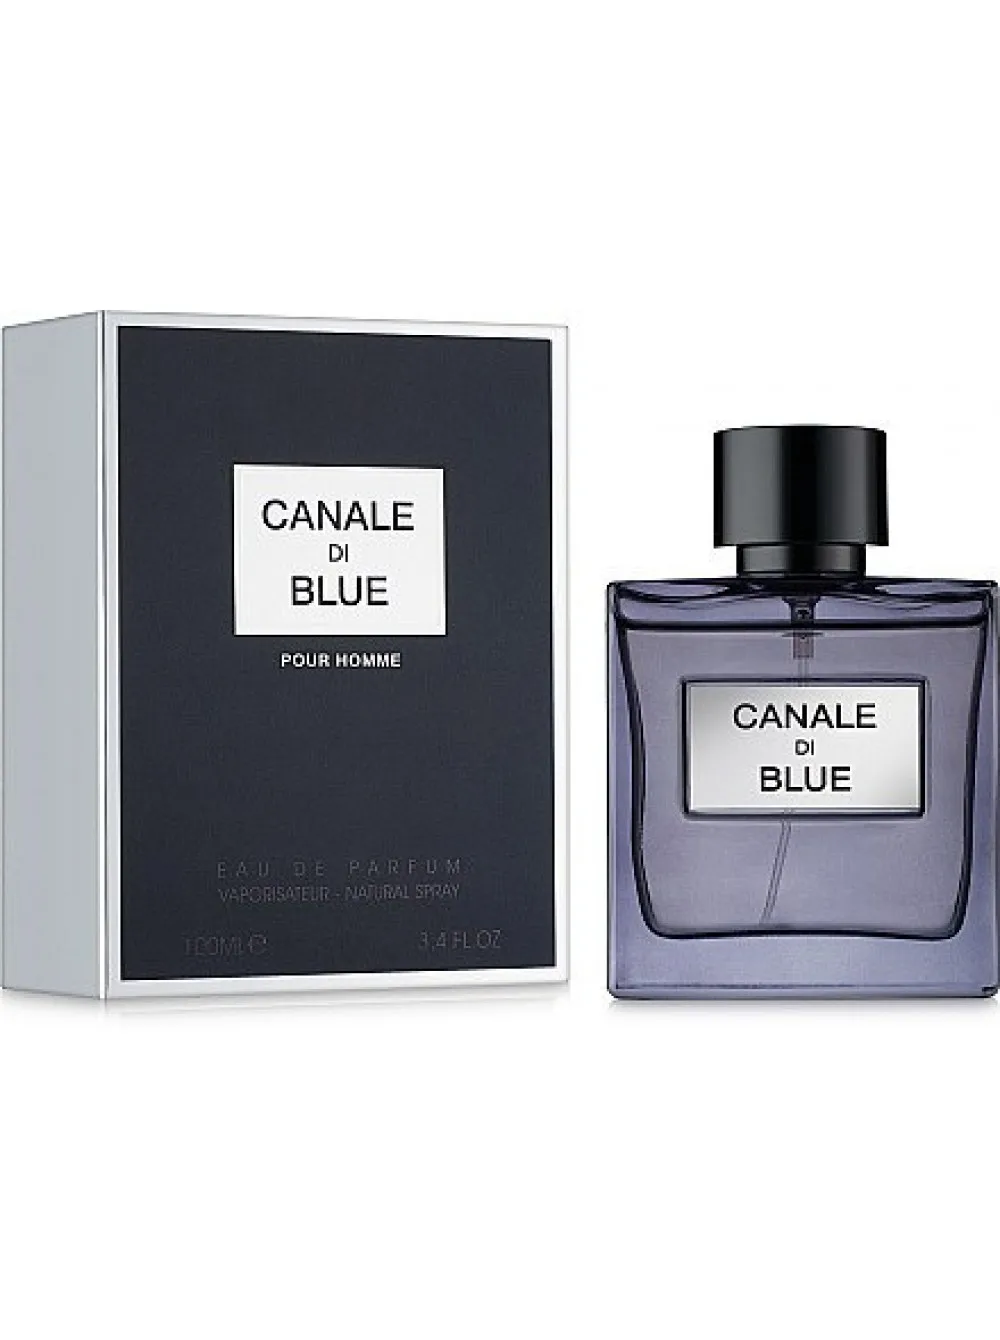 Perfume mini Chanel Bleu de Chanel male 15 ml - AliExpress